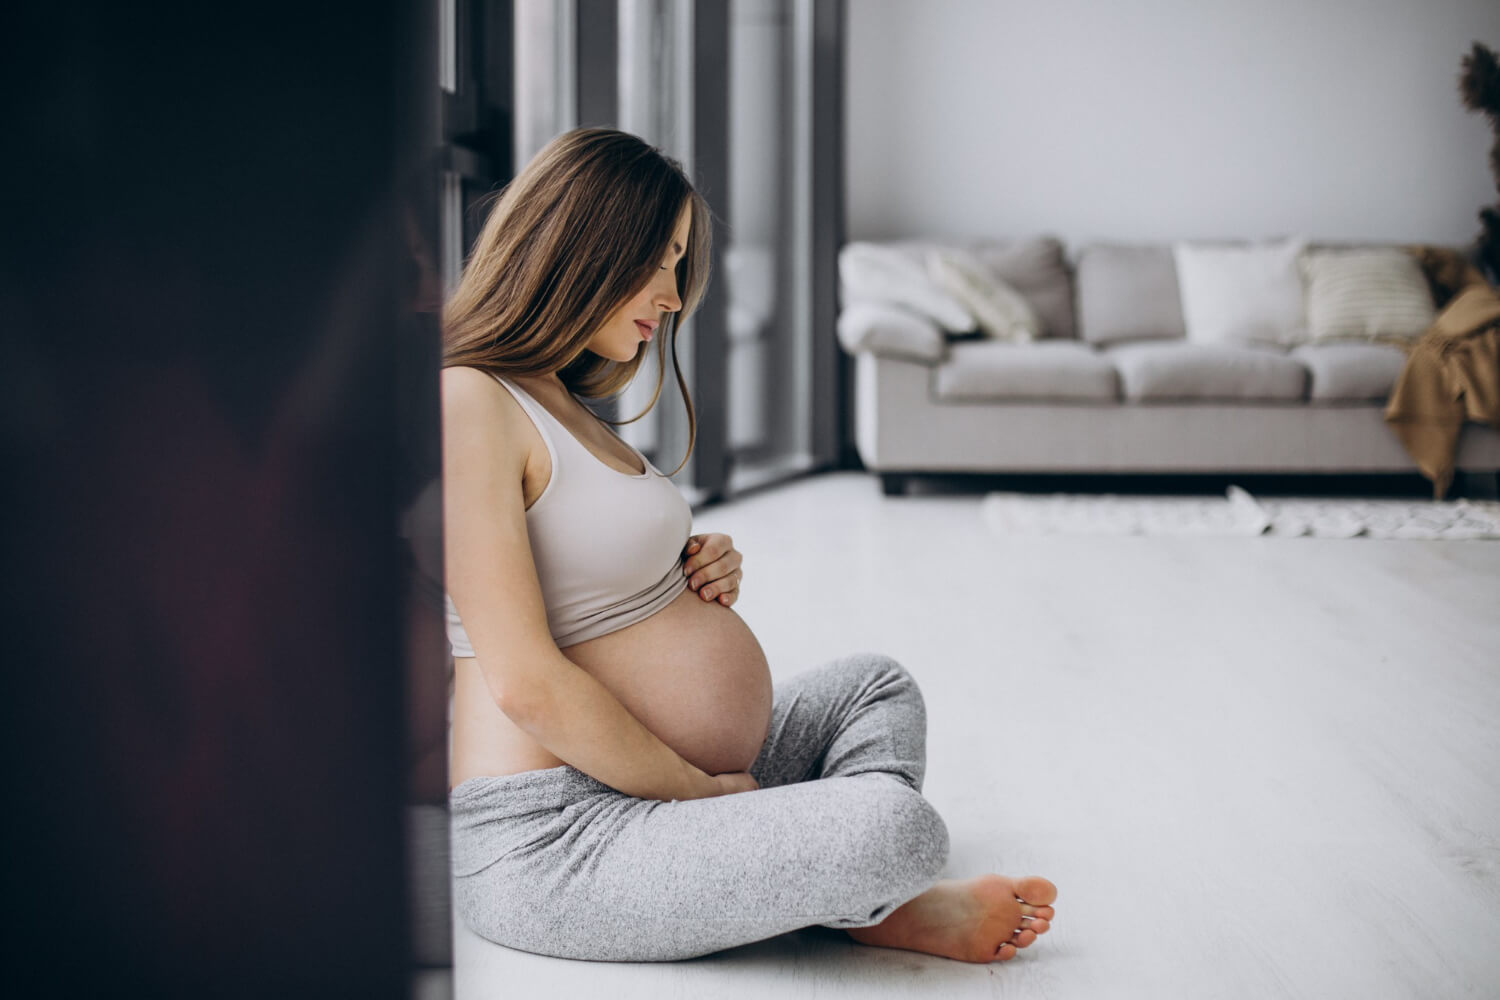 7 Program Pendukung Kehamilan Apk Pintar untuk Menyambut Buah Hati Anda